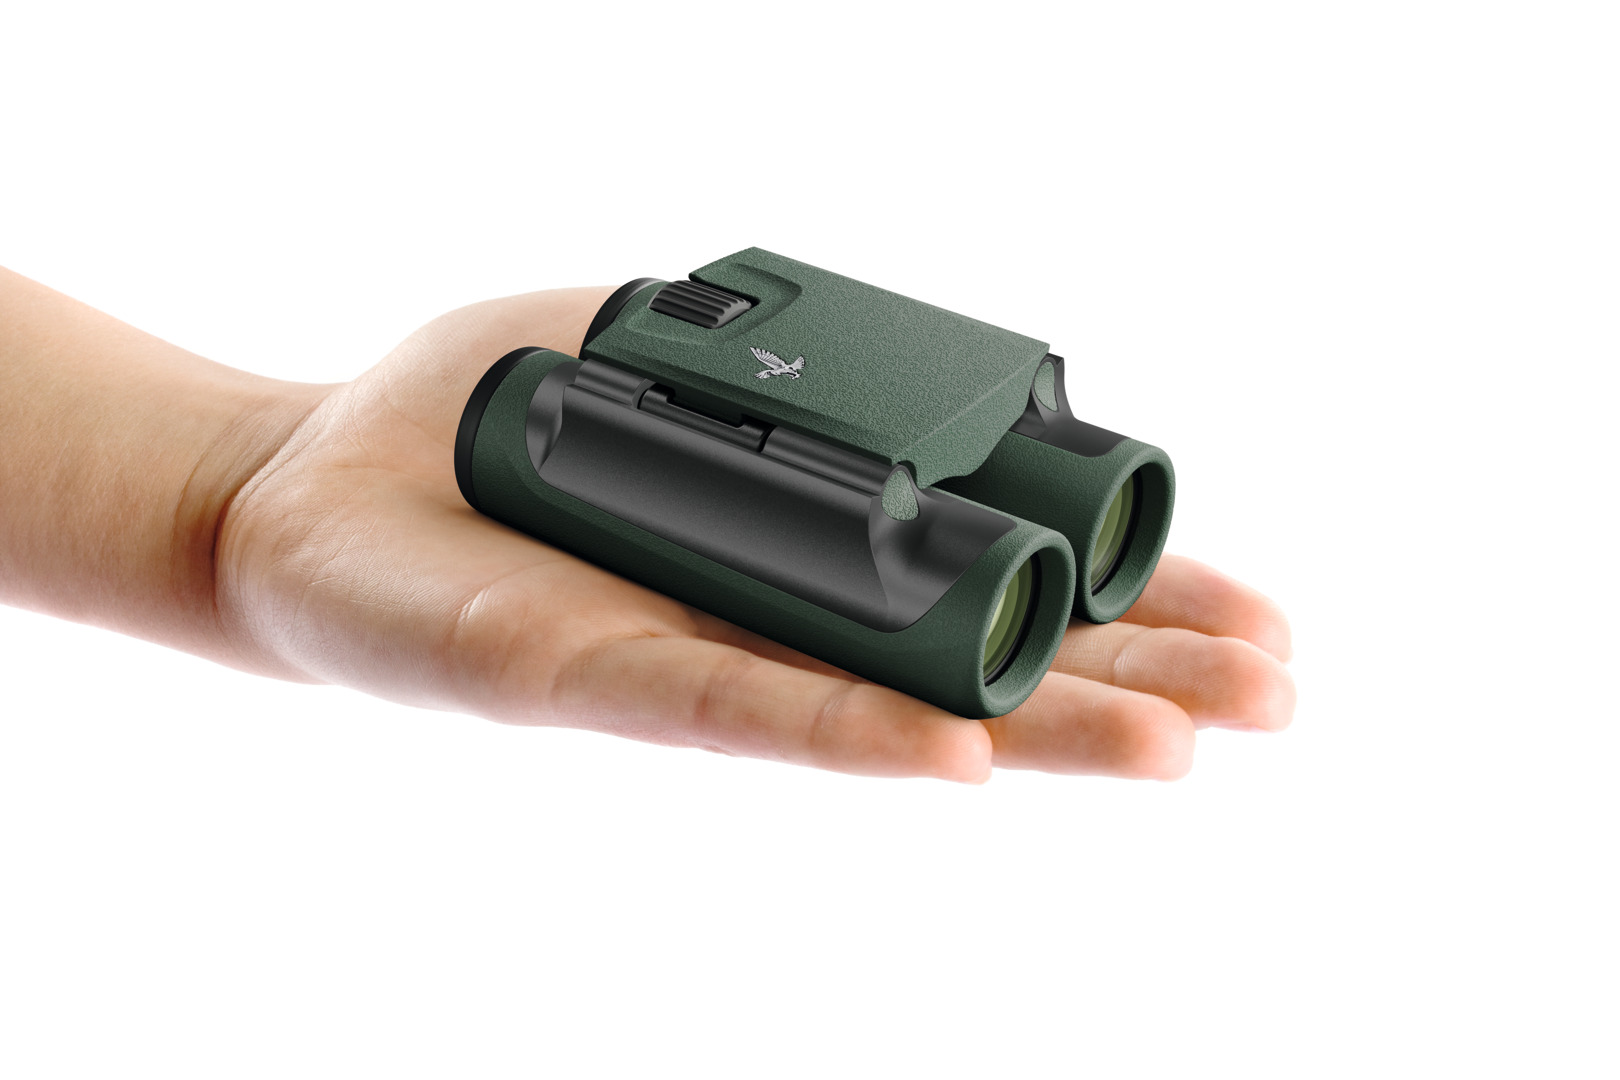 Swarovski CL-Pocket 10x25 in Grün liegend auf einer Handfläche die  von links in das Bild hineinkommt